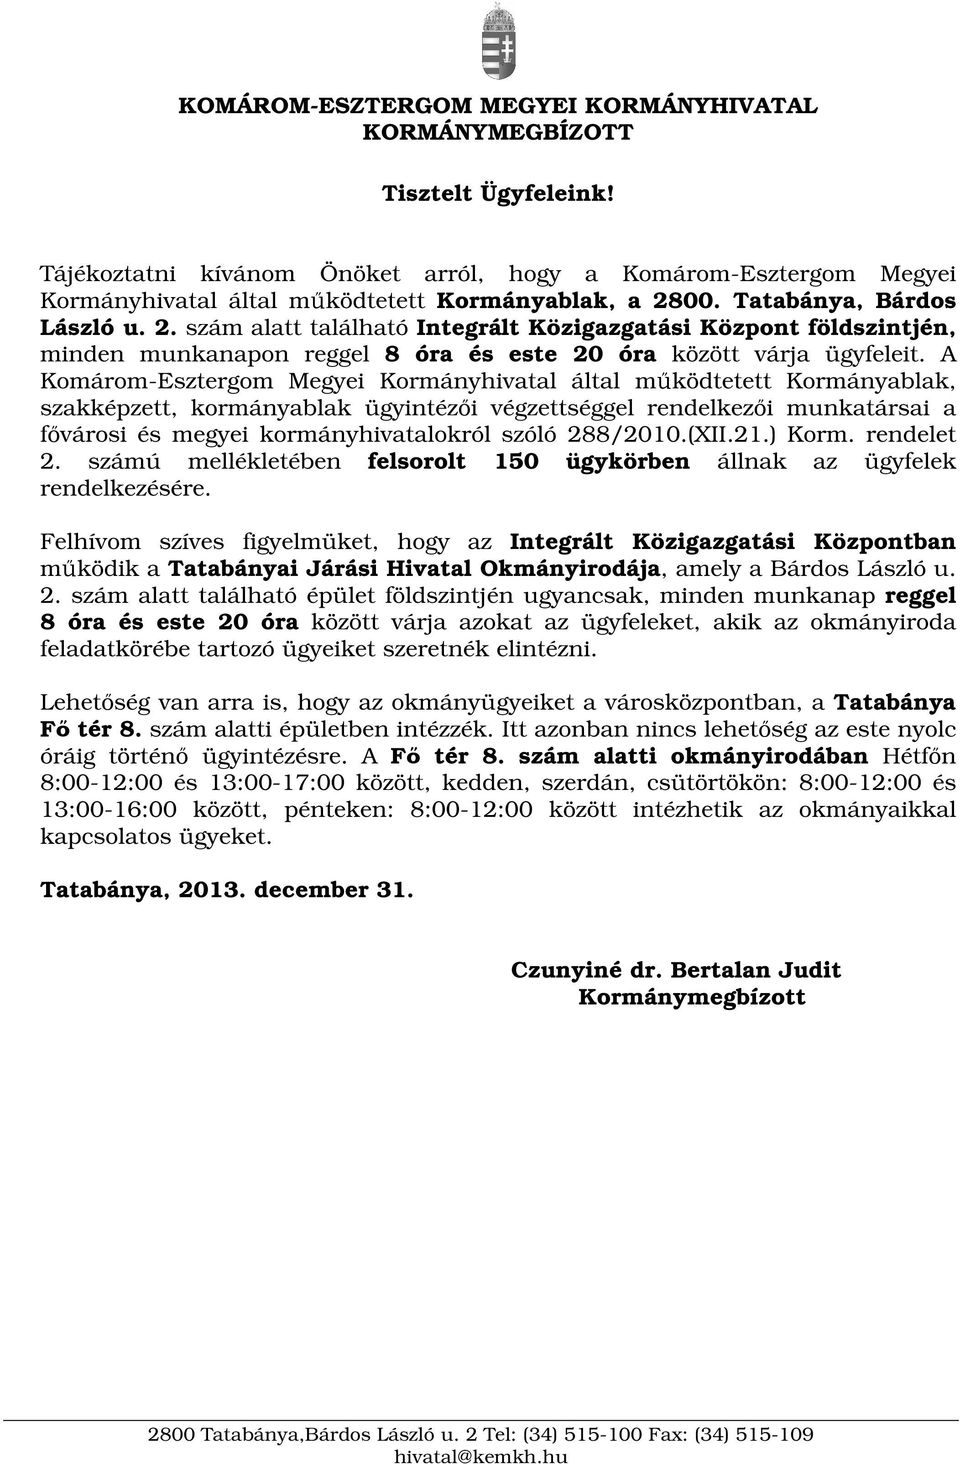 A Komárom-Esztergom Megyei Kormányhivatal által mködtetett Kormányablak, szakképzett, kormányablak ügyintézi végzettséggel rendelkezi munkatársai a fvárosi és megyei kormányhivatalokról szóló